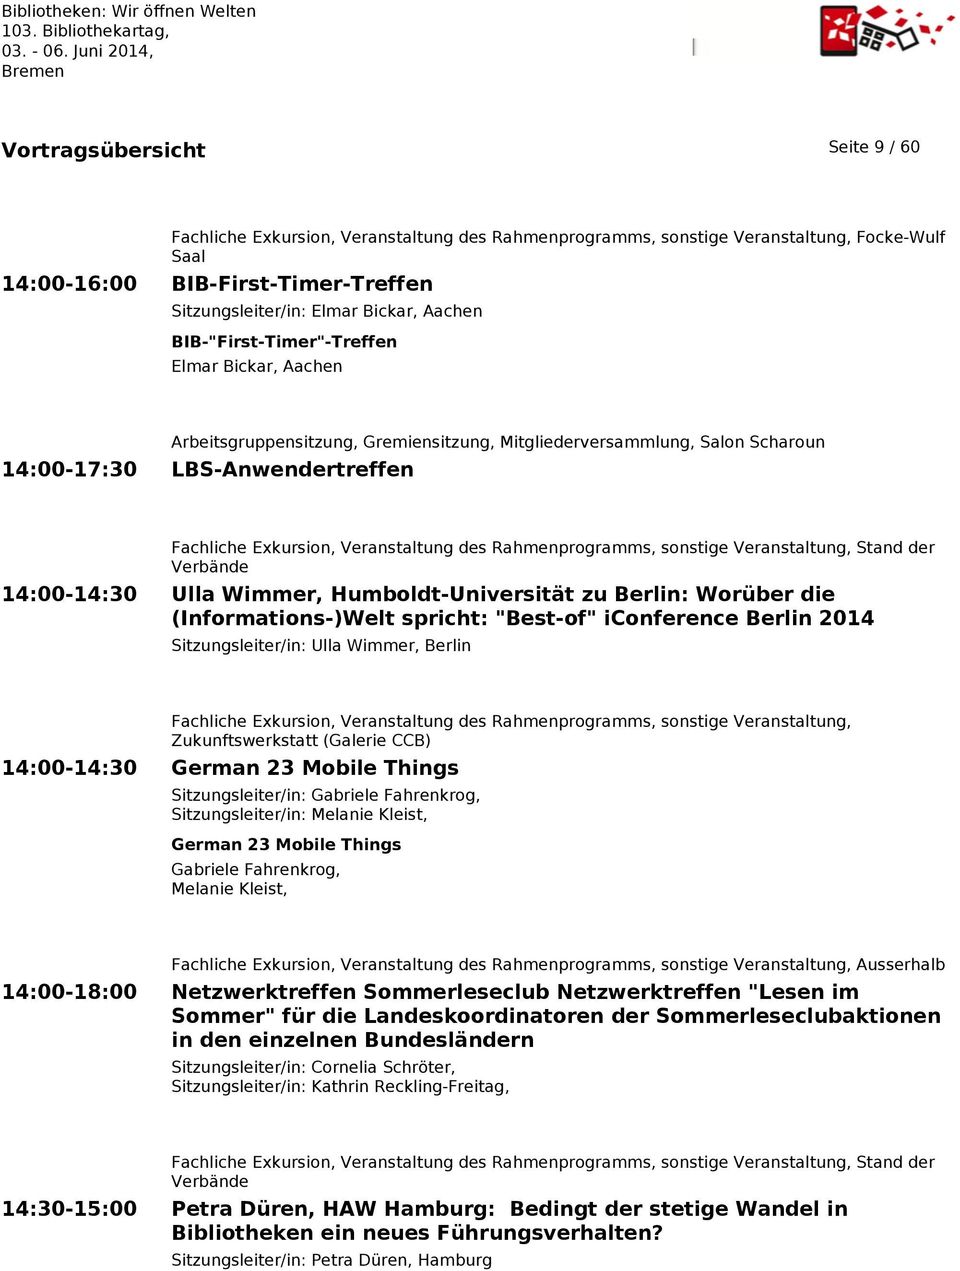 des Rahmenprogramms, sonstige Veranstaltung, Stand der Verbände 14:00-14:30 Ulla Wimmer, Humboldt-Universität zu Berlin: Worüber die (Informations-)Welt spricht: "Best-of" iconference Berlin 2014